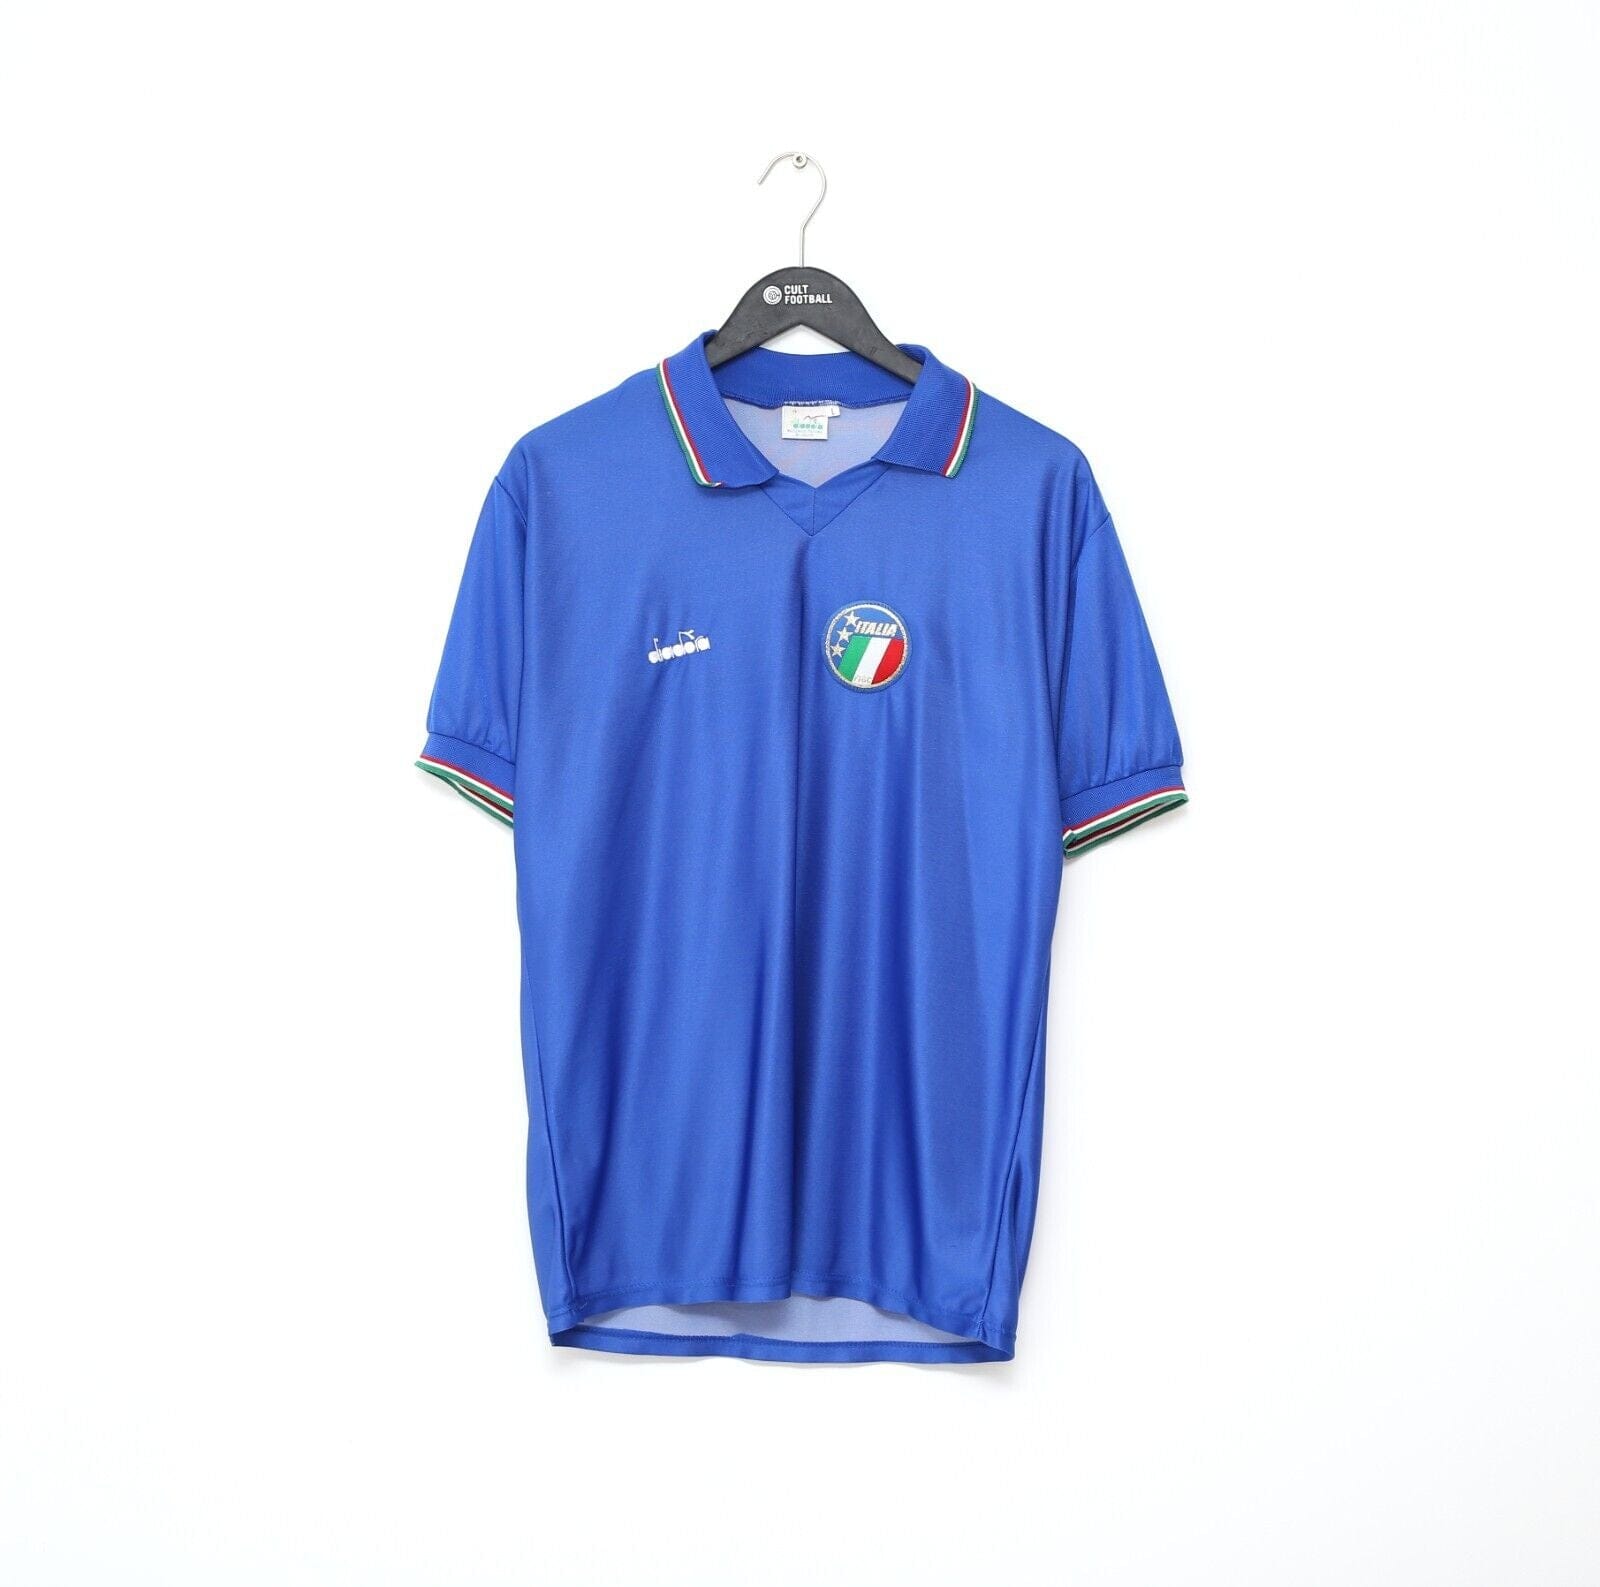 1990 SCHILLACI #19 Italy Vintage Diadora Home Football Shirt Italia 90 (M)